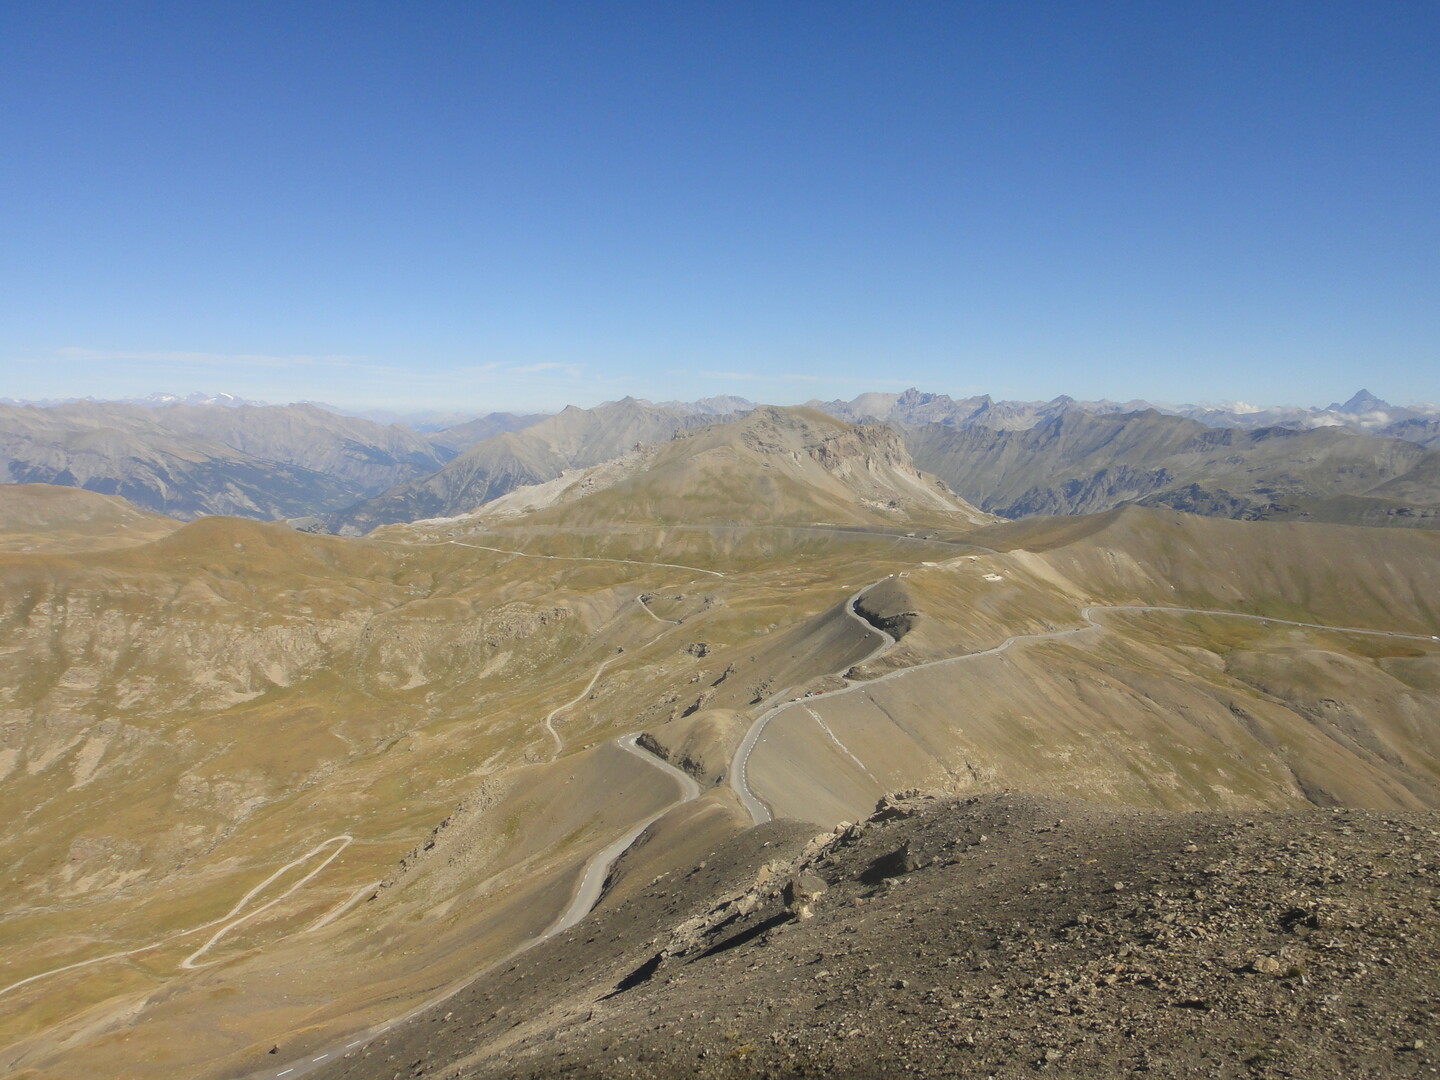 Blick vom Gipfel der Cime de la Bonette (2680 m) auf die Passhöhe, den Col de la Bonette. Der Berg, der sich im Mittelgrund erhebt, ist der Sommet de Restefond. Links davon liegt der Faux Col de Restefond, rechts unterhalb der Col de Restefond. Die nördliche Passstraße aus Richtung Jausier quert den ersten und touchiert den zweiten, jeweils ansteigend.
Hinten links sieht man die Barre des Écrins, den südlichsten und westlichsten 4000er der Alpen.
Ganz hinten rechts ragt der dreiecksförmige Monviso (3841 m) hervor, der höchste Gipfel der Cottischen Alpen. 